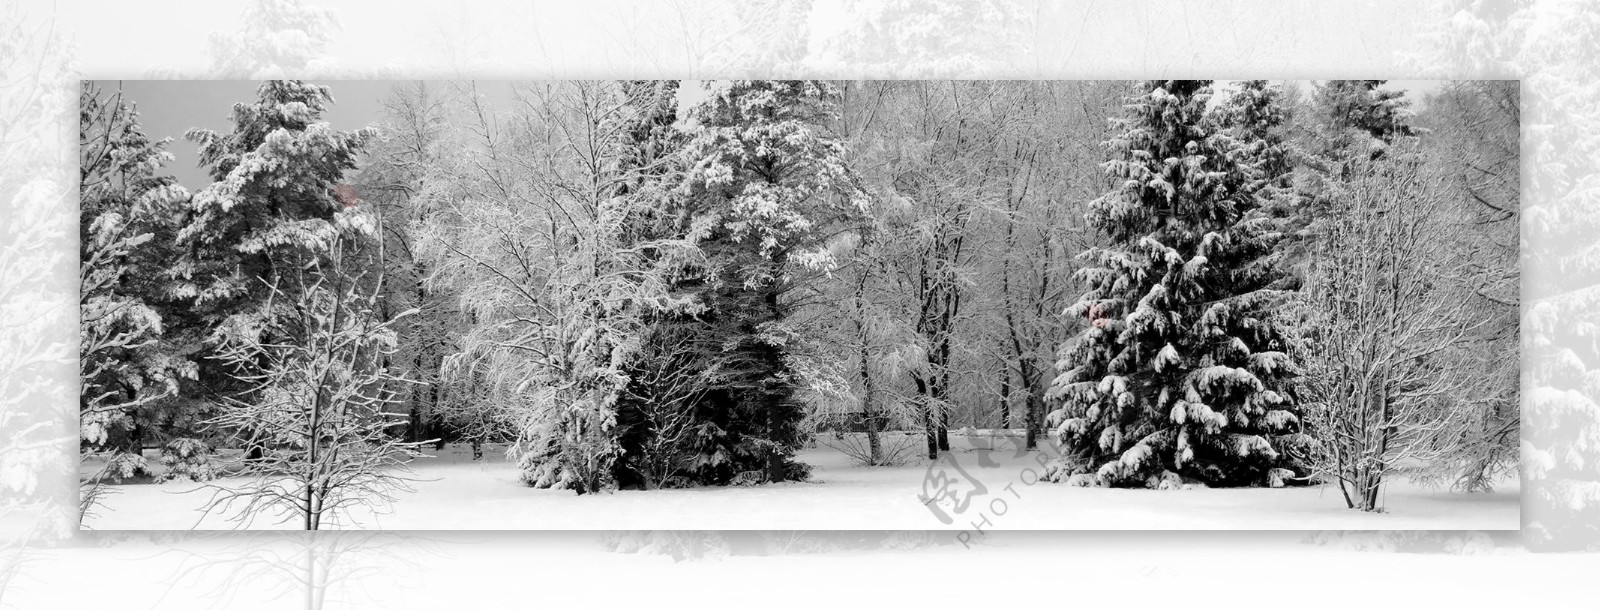 圣诞树雪景图片背景素材17